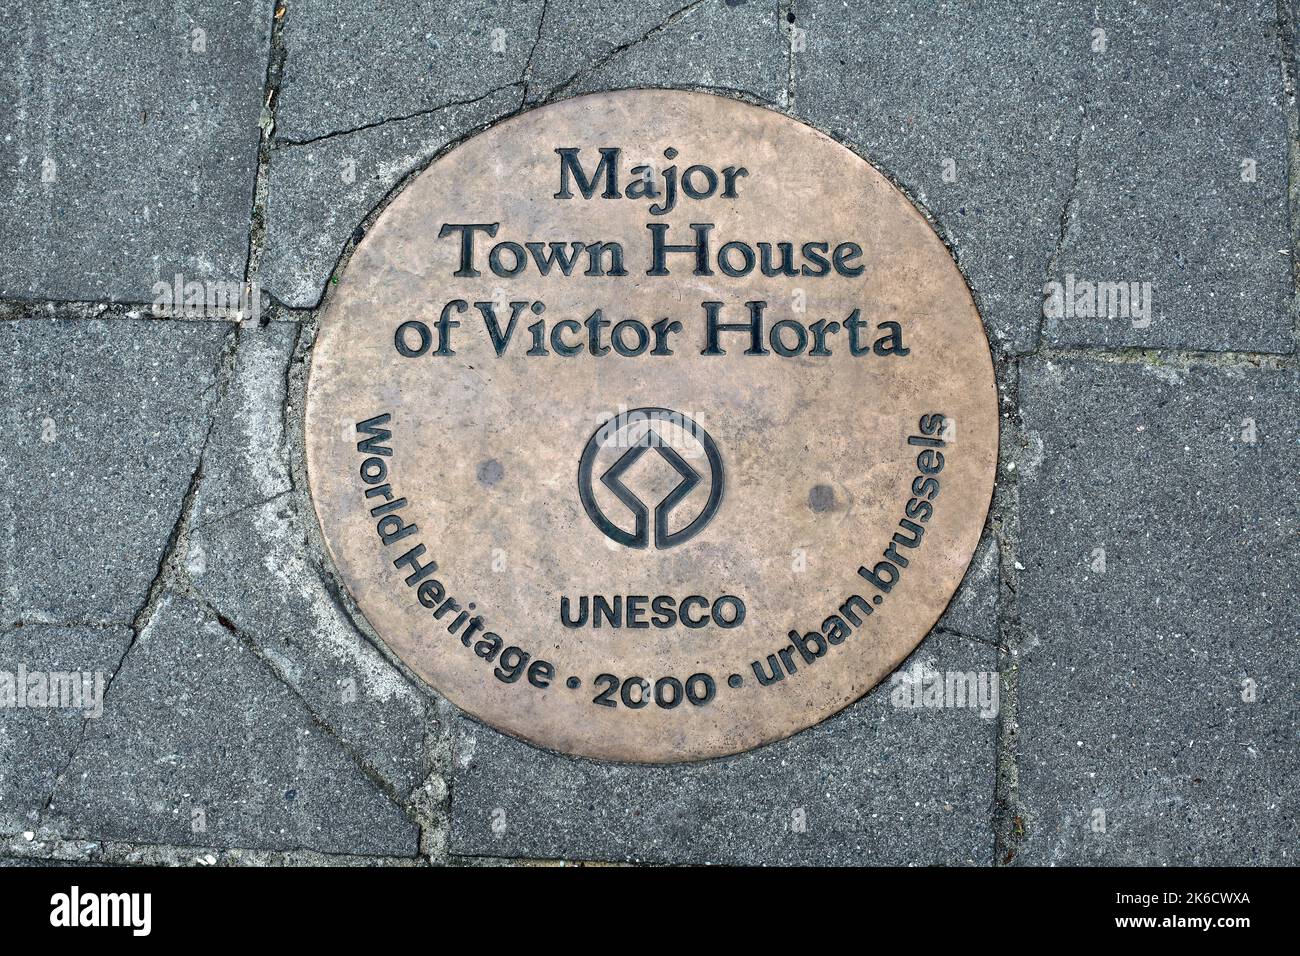 Un cartel en el pavimento fuera del Museo Horta, Bruselas, la casa y el estudio del arquitecto Victor Horta, que denota su estatus de Patrimonio de la Humanidad de la UNESCO. Foto de stock